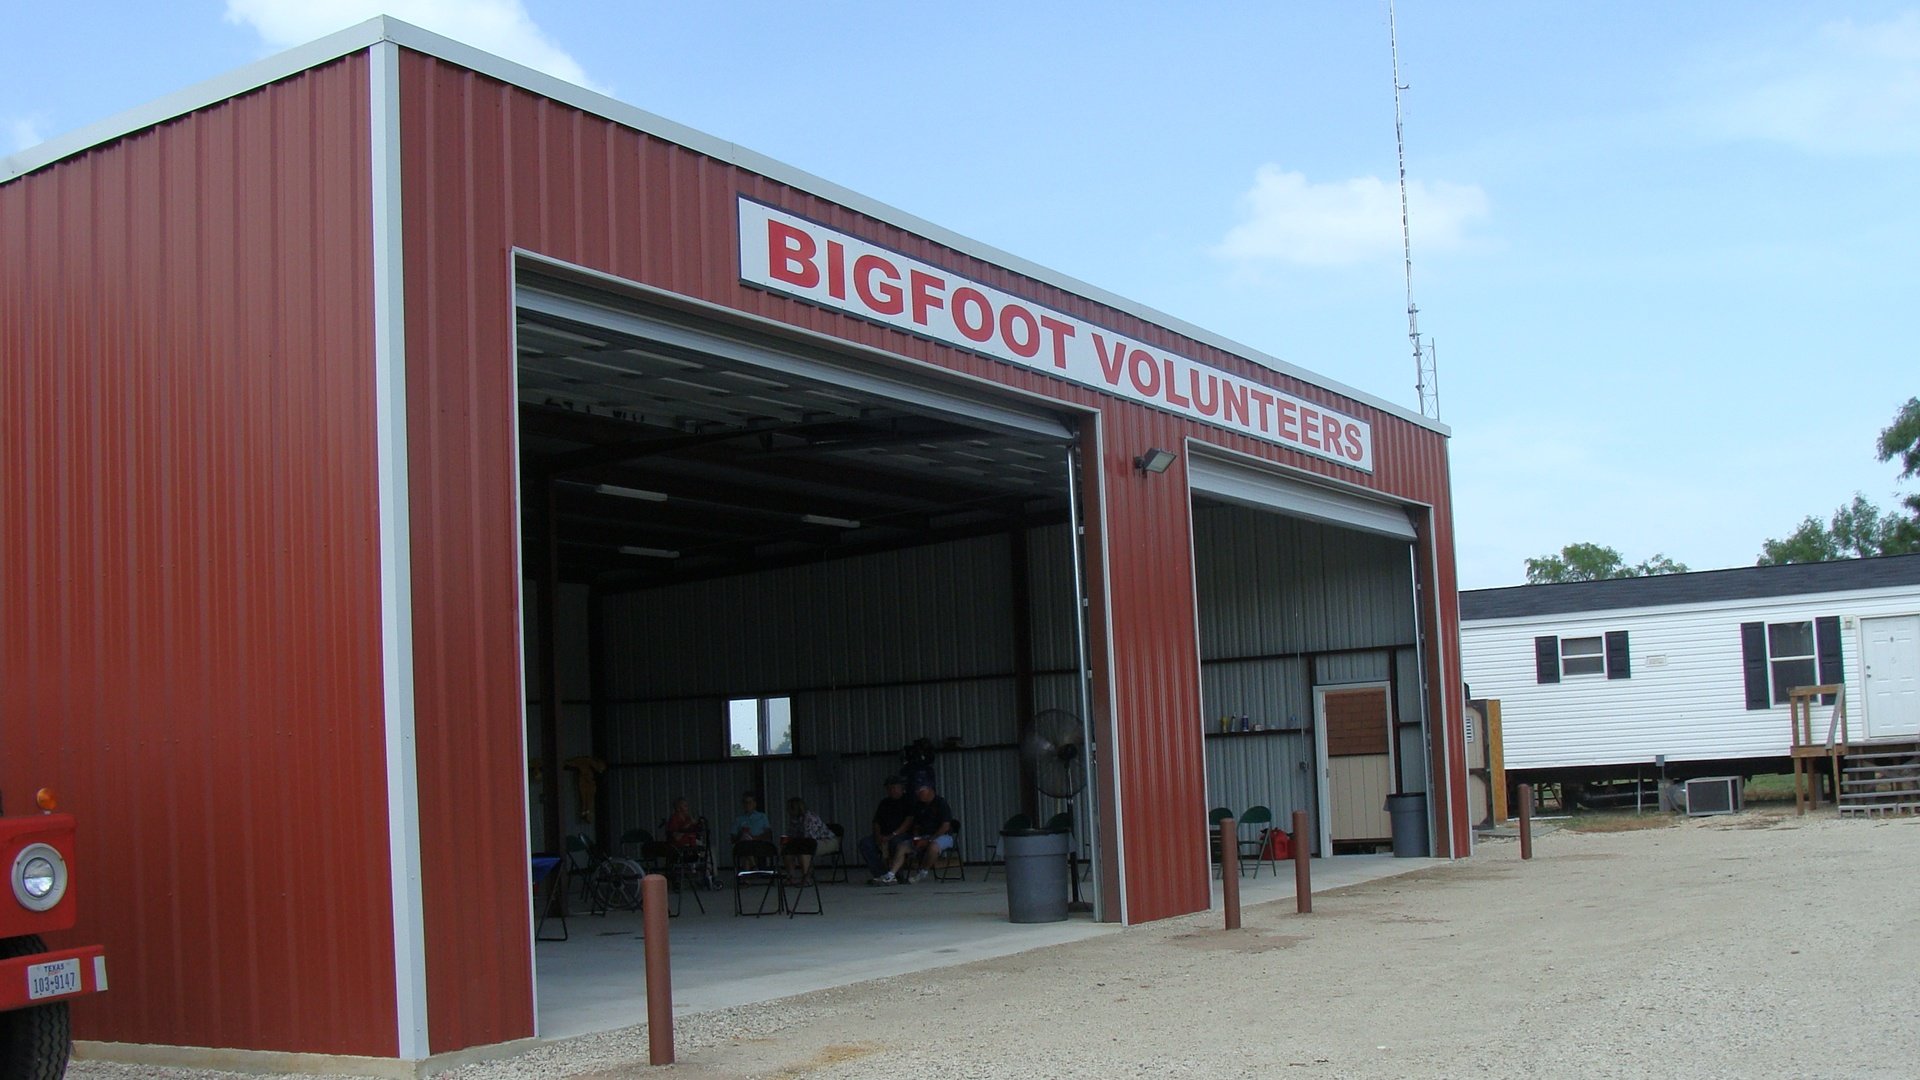 The Bigfoot VFD building.